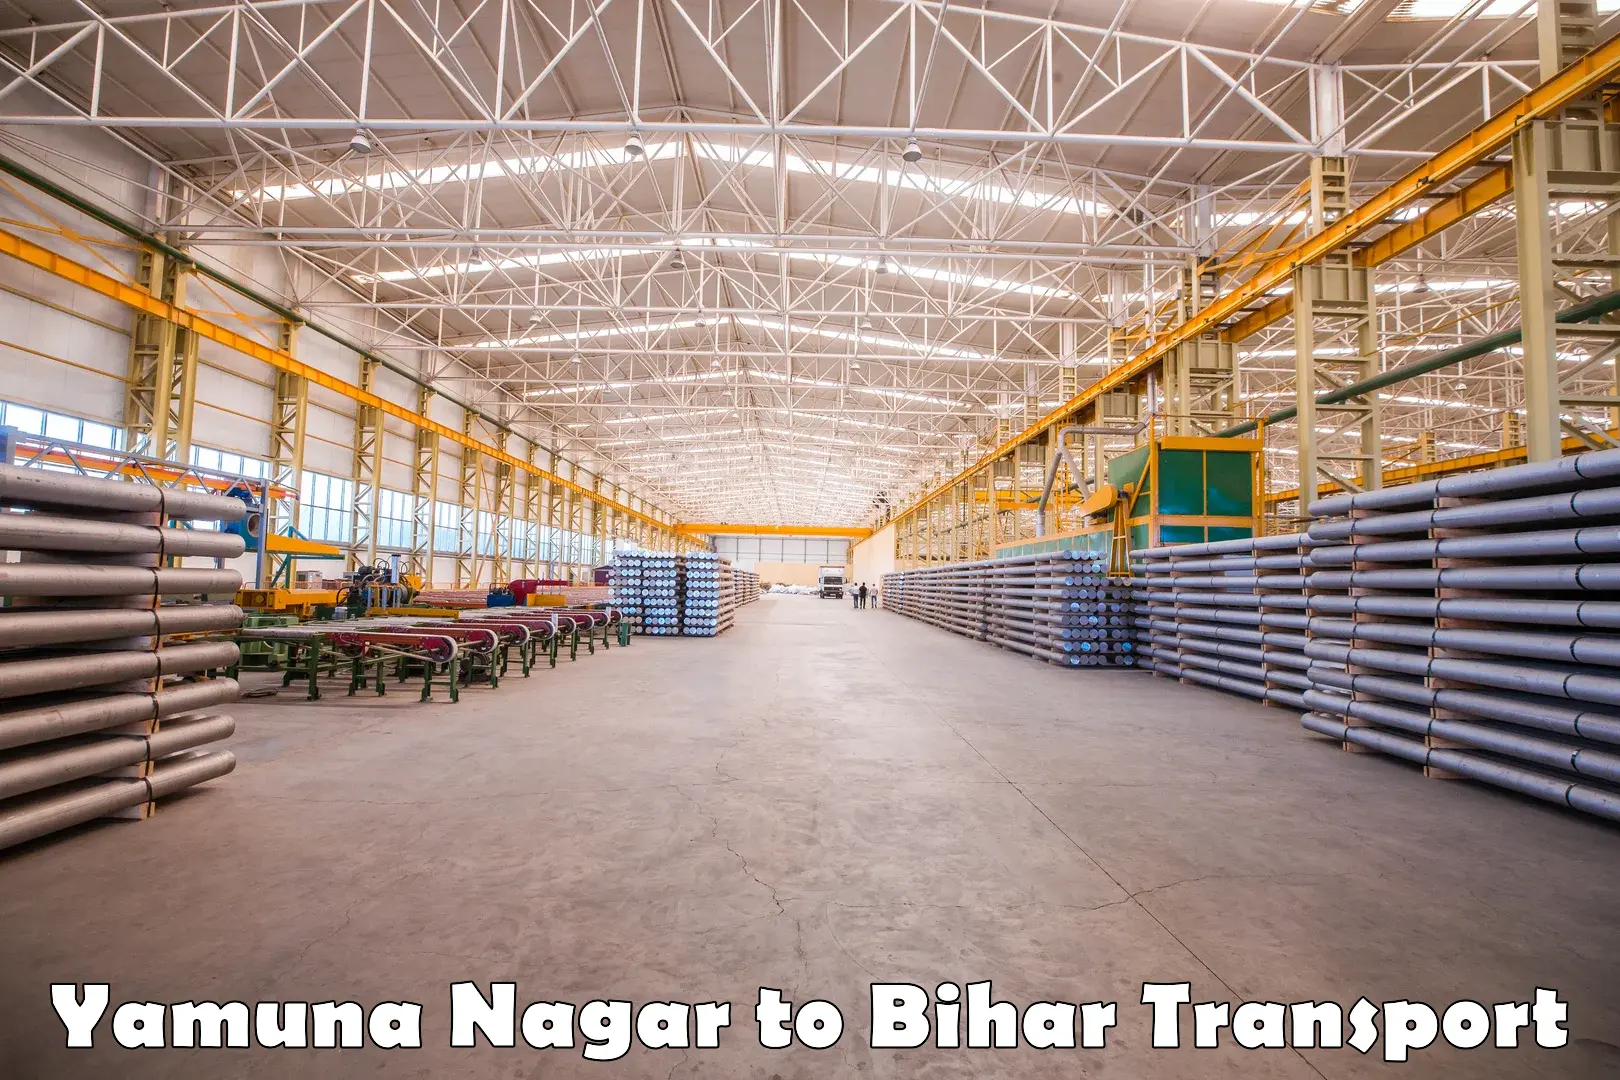 Shipping partner Yamuna Nagar to Barauni